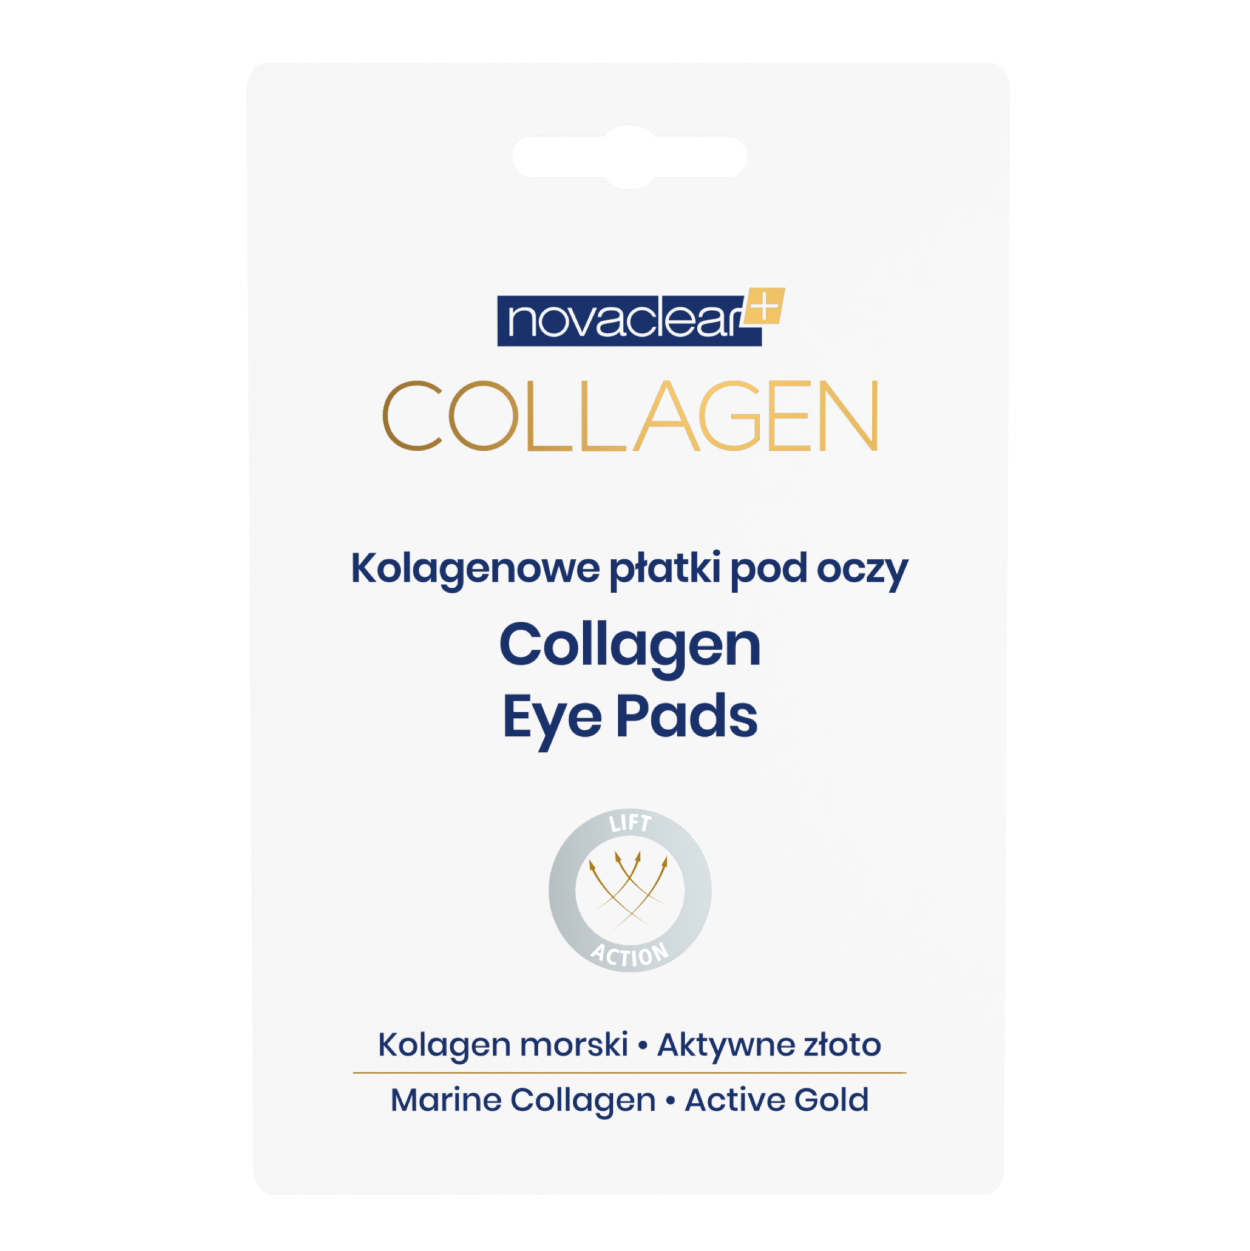 novaclear-collagen-collagen-eye-pads